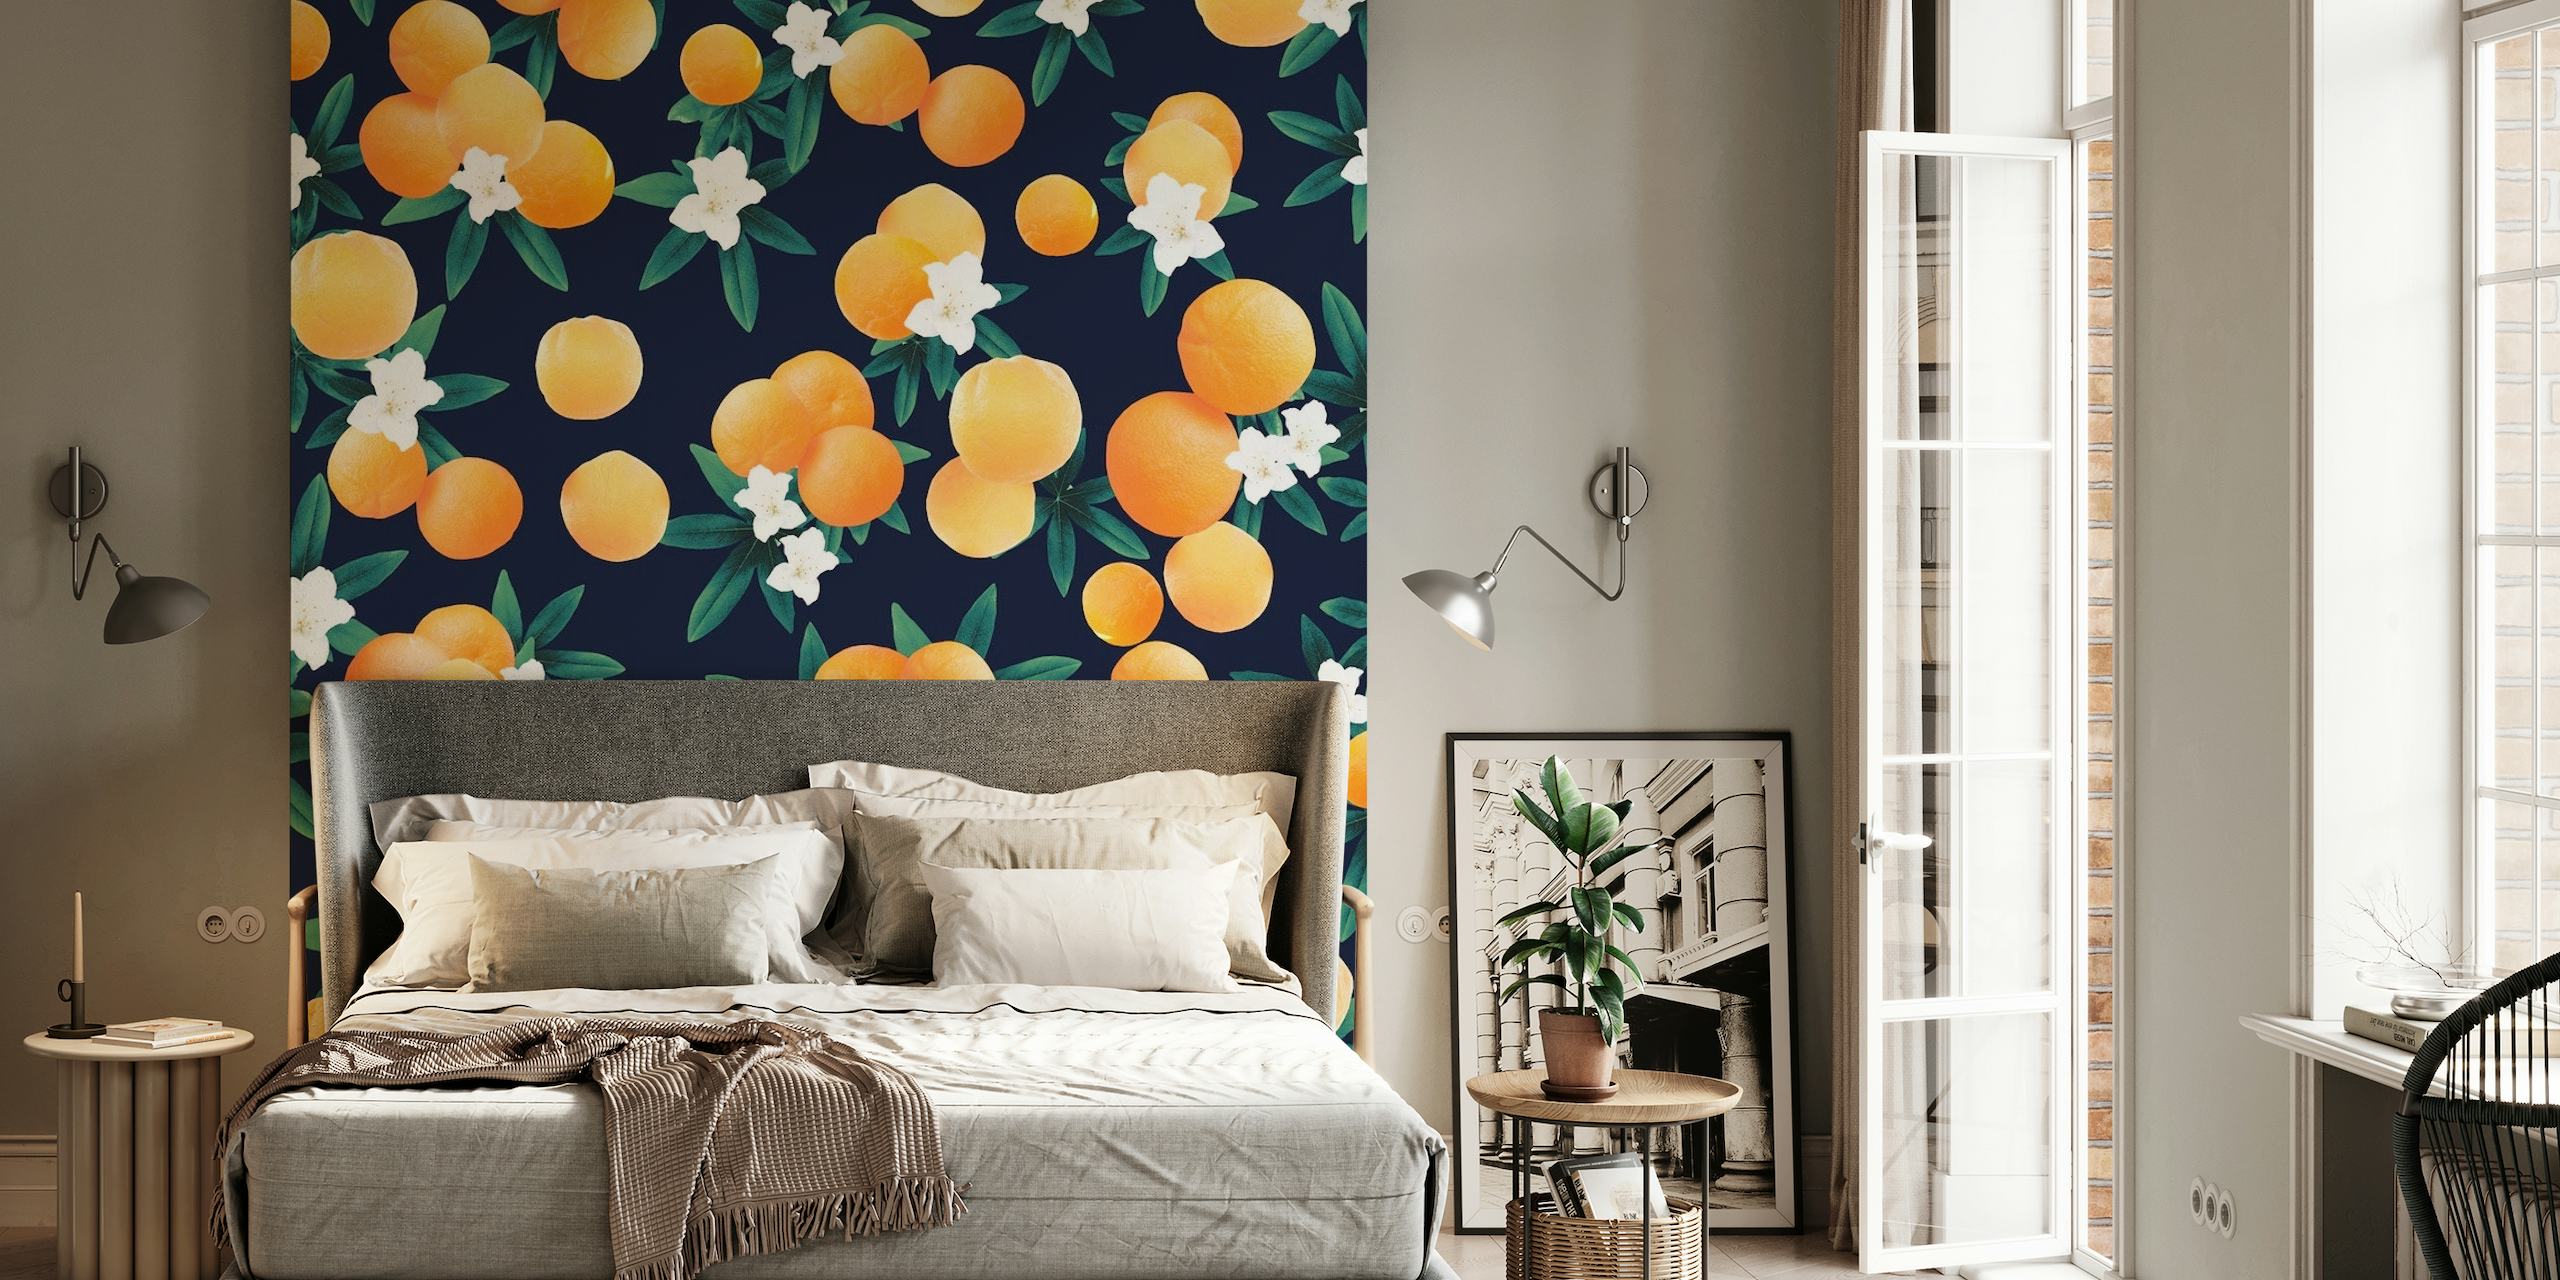 Fototapete mit leuchtend orangefarbenen Zitrusfrüchten und weißen Blumen vor einem dunkelblauen Hintergrund.